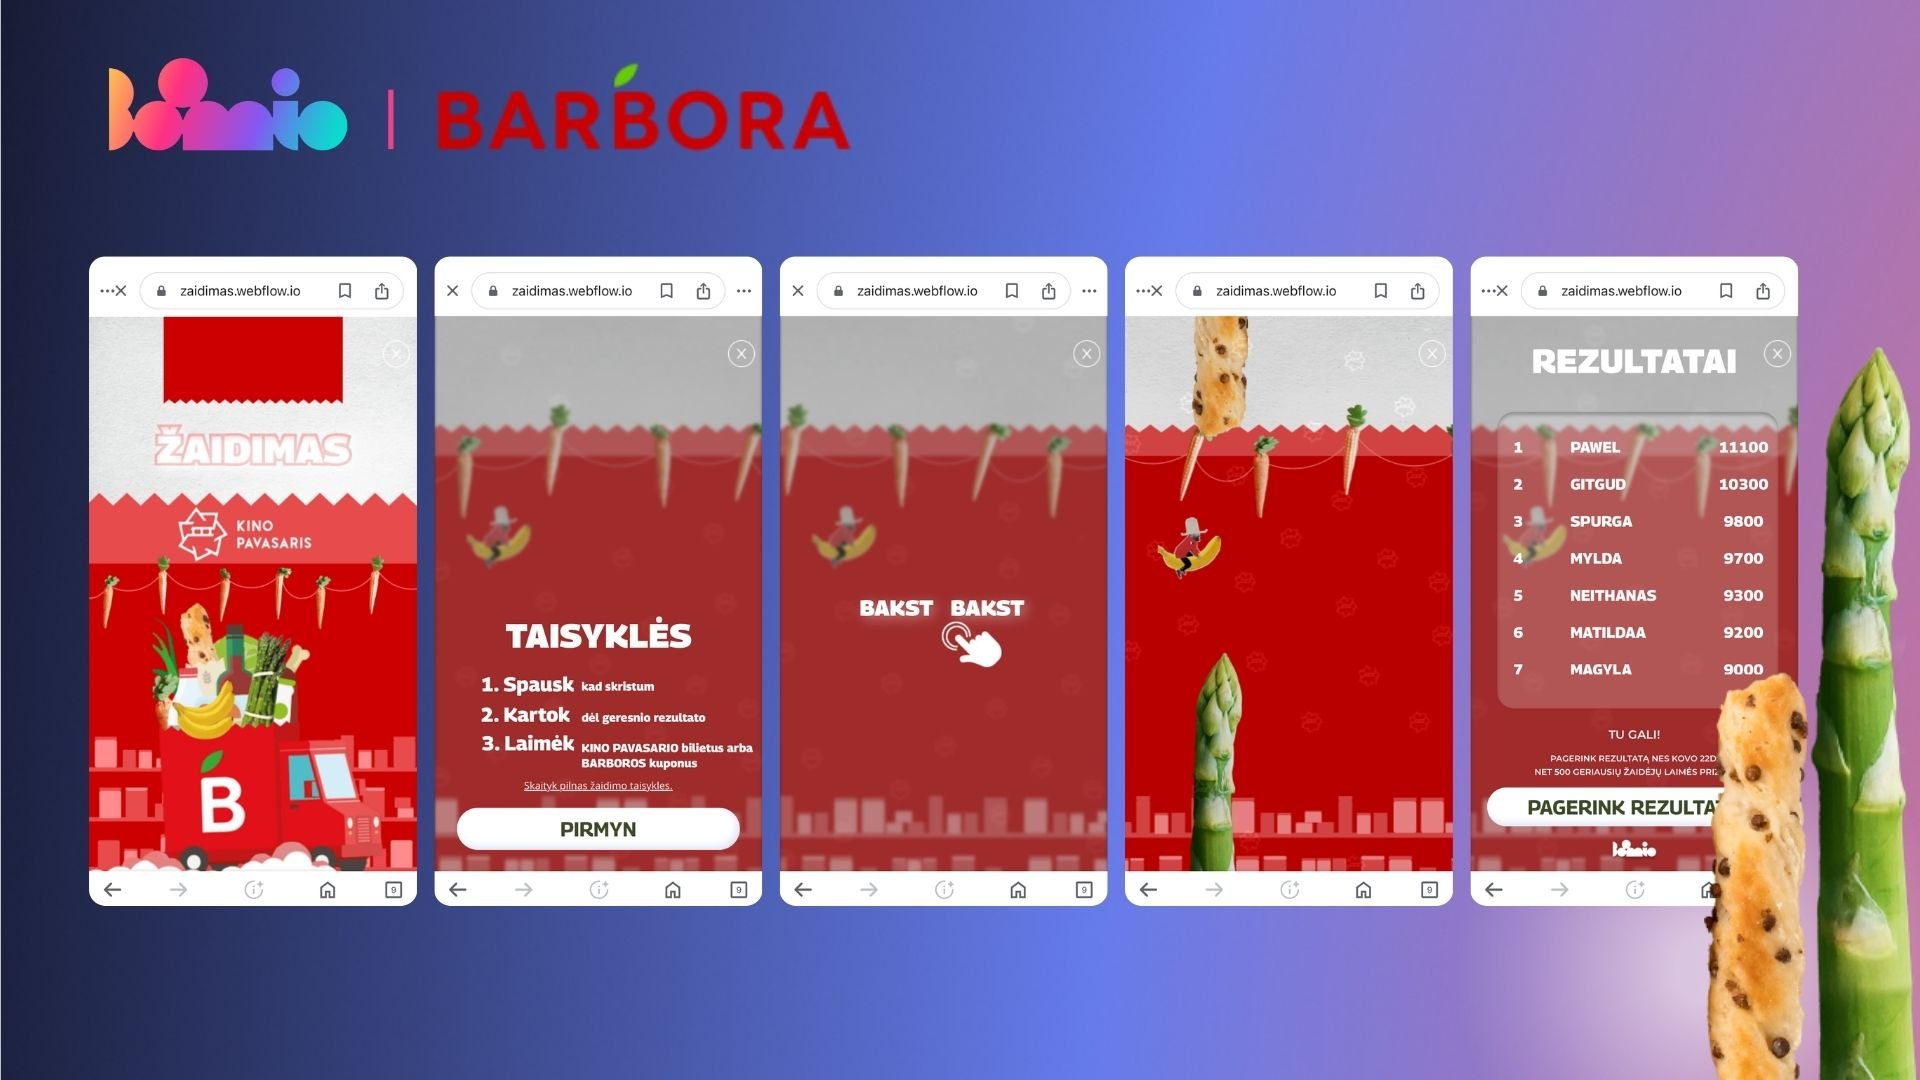 „Barboros“ interaktyvus žaidimas stebino rezultatais: klientai rekordininkai, 150 tūkst. sužaistų sesijų ir aplenktas „TikTok“